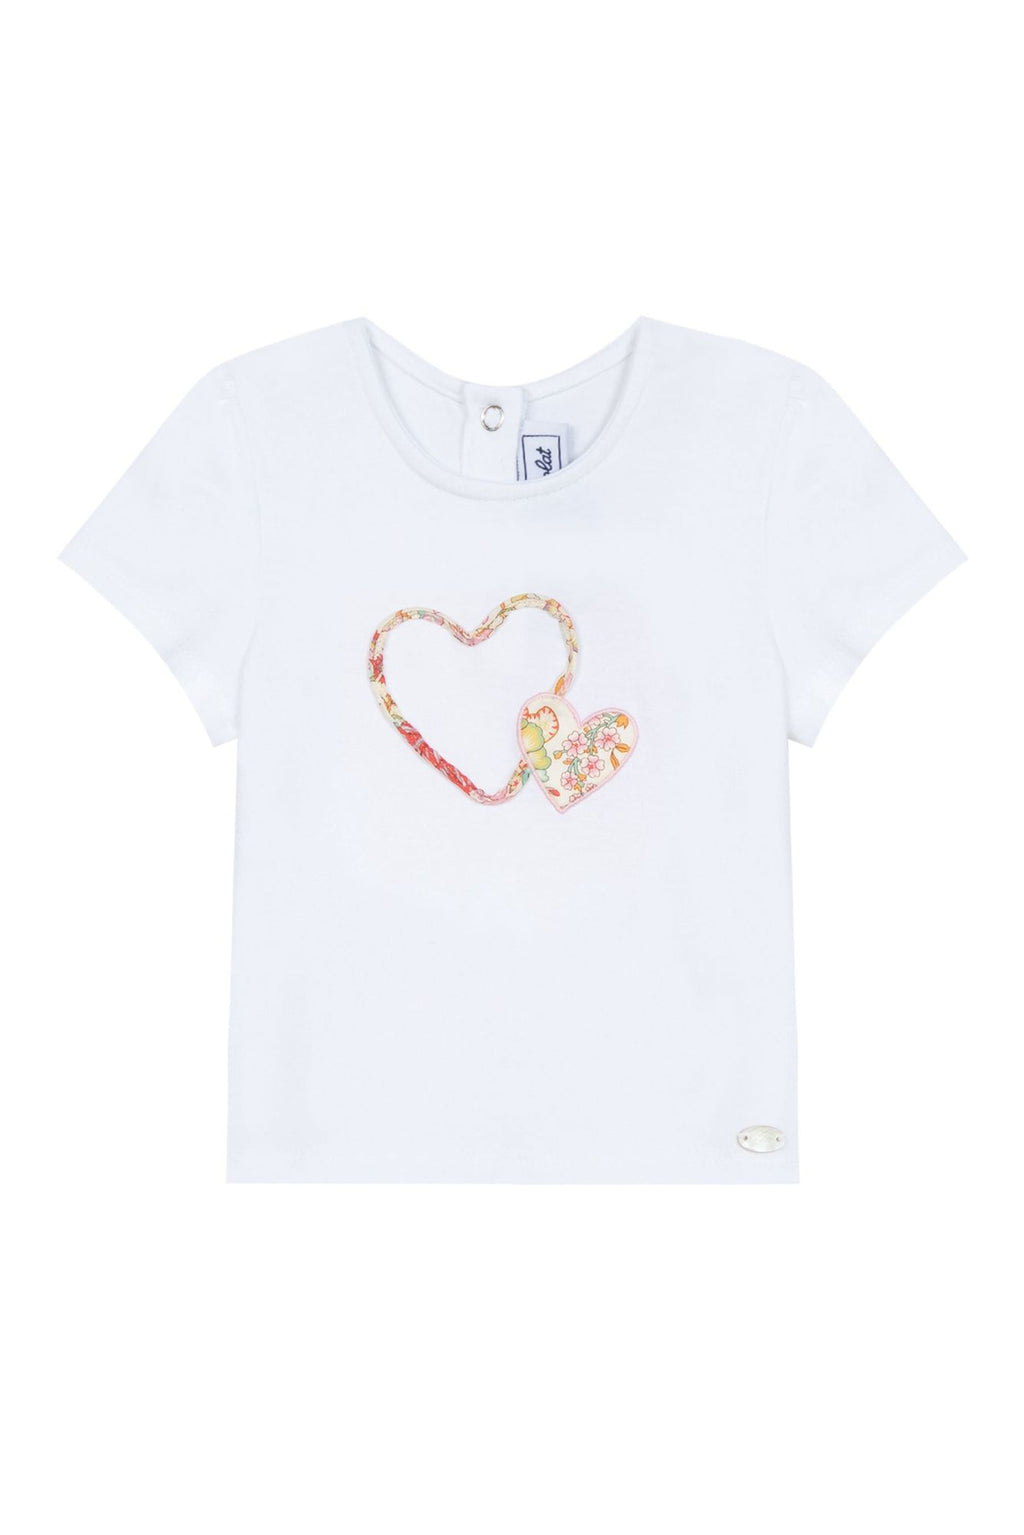 T -Shirt - Jersey Peony Hearts